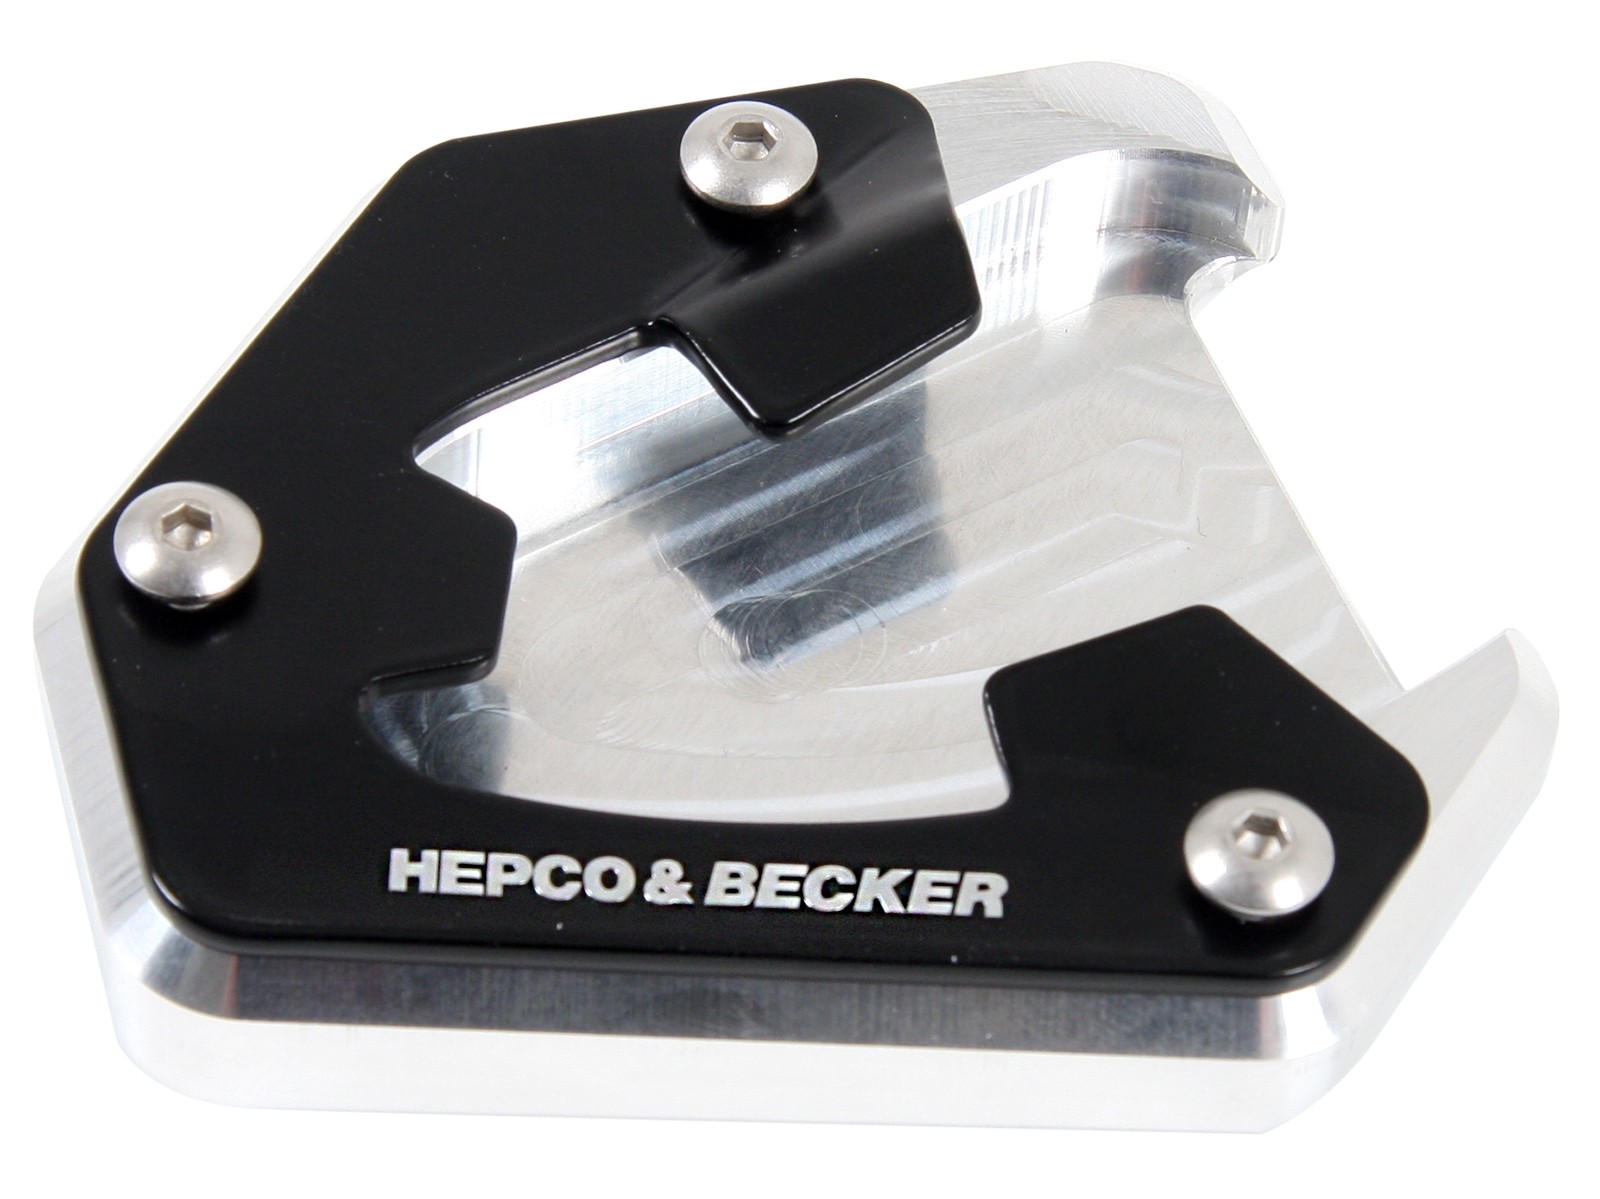 Parabrisas Hepco & Becker Deflector de Viento Universal